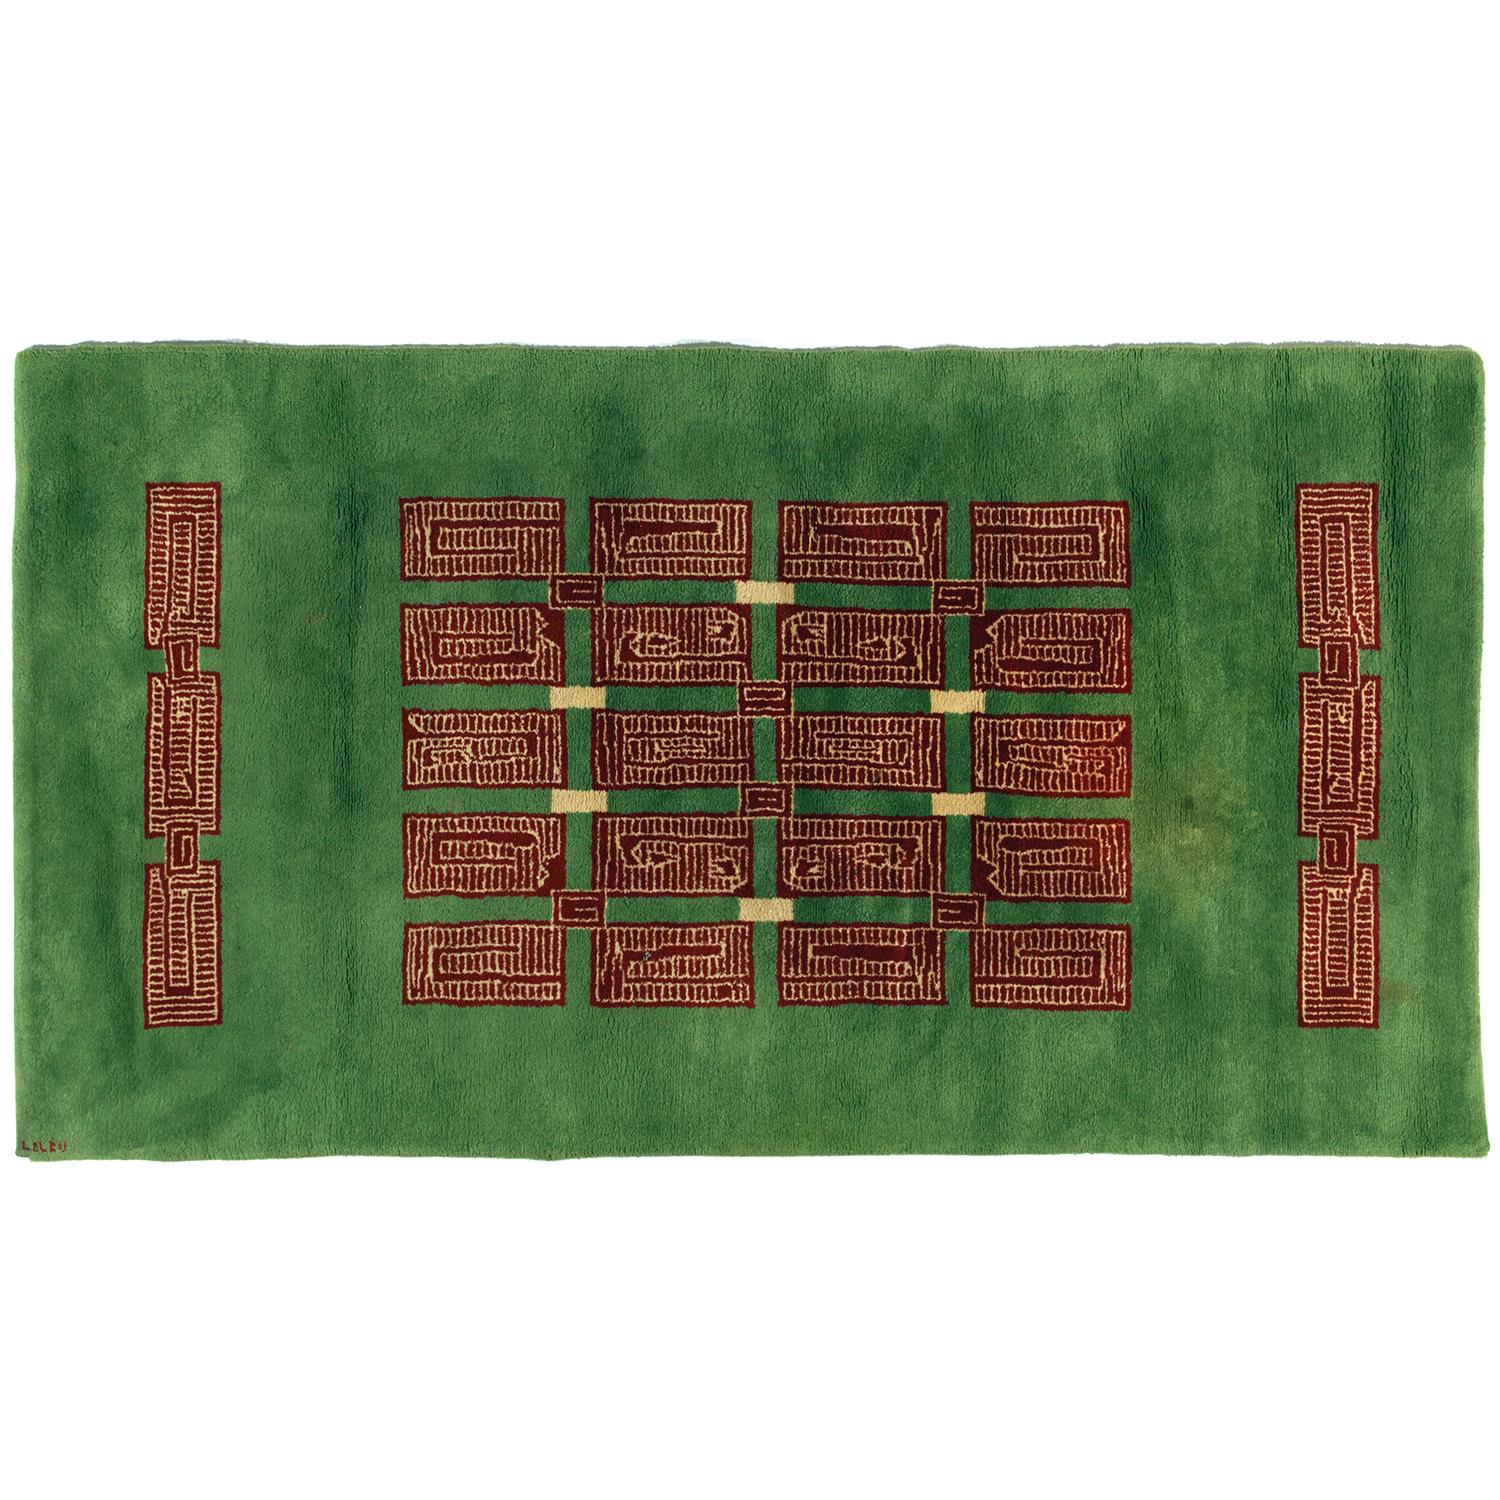 A Großer geknüpfter Wollteppich mit grünem Grund, die zentrale Dekoration bildet eine geometrische Komposition mit braunen und sandfarbenen aztekischen Mustern. Späteres Futter aus Juteleinen. Im Schuss signiert 